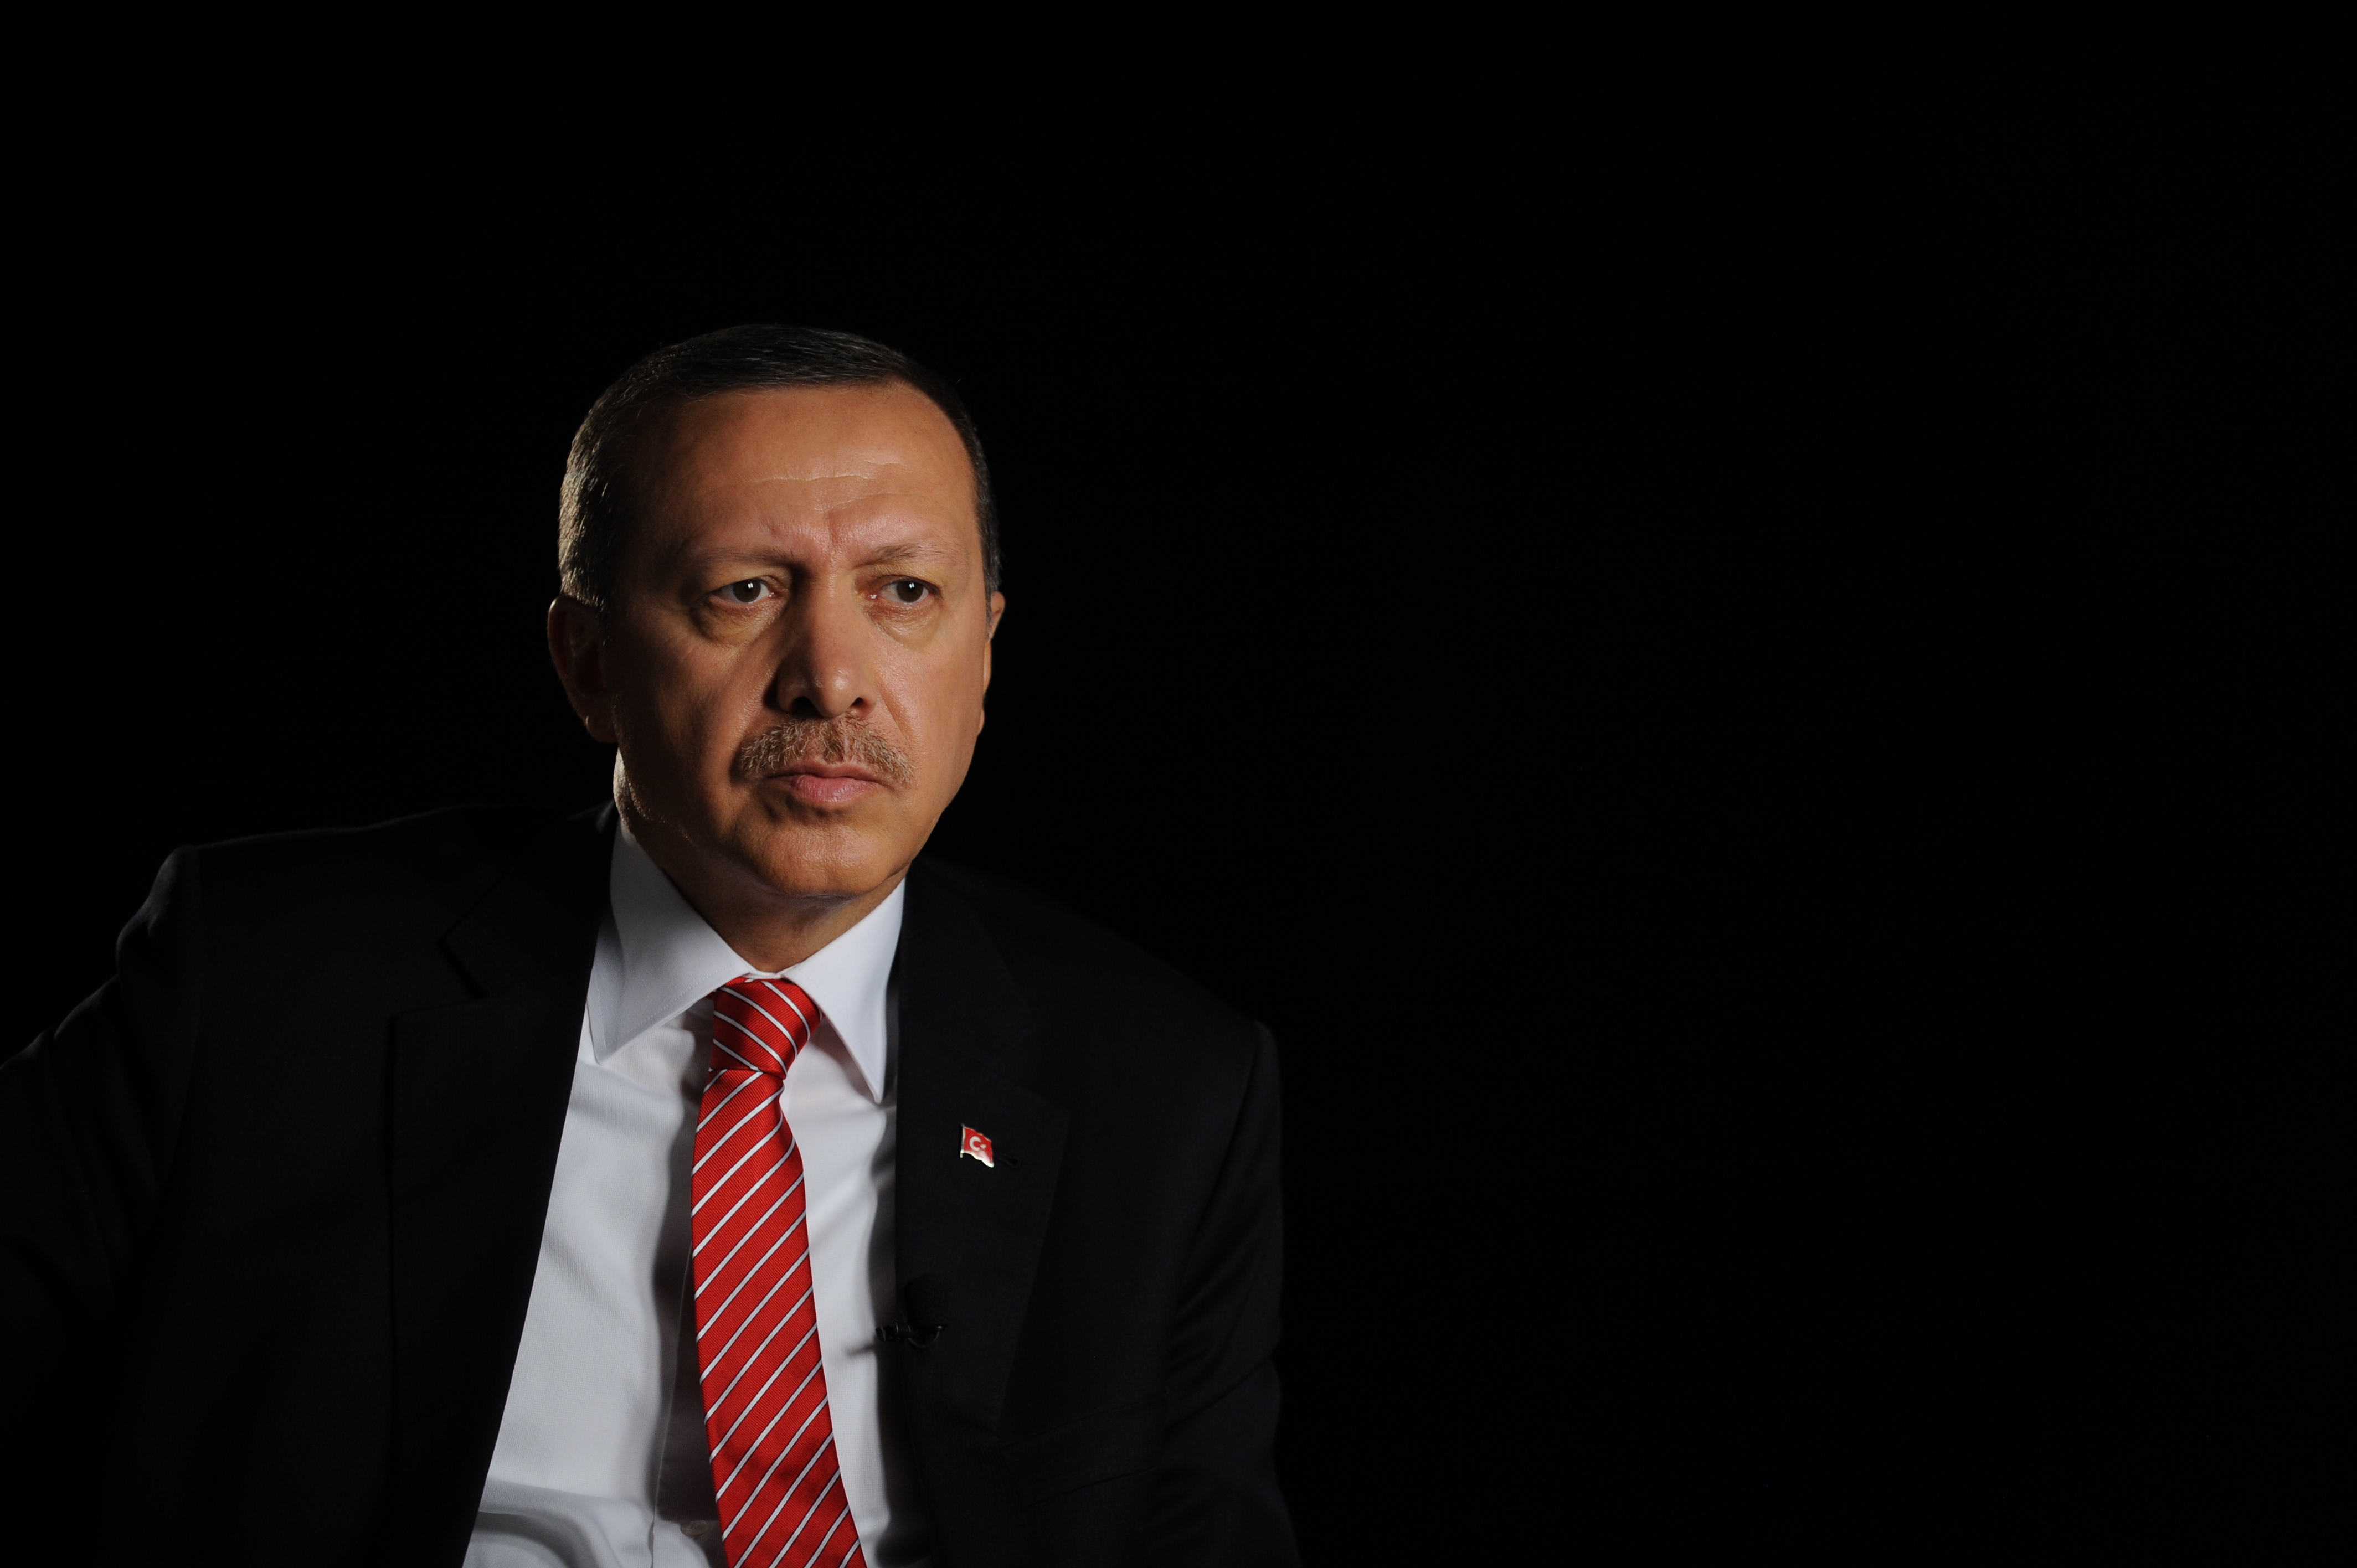 Son dakika! Cumhurbaşkanı Erdoğan'dan, Kılıçdaroğlu ve partisine tarihi gönderme! Haysiyetlerini kaybettiler.